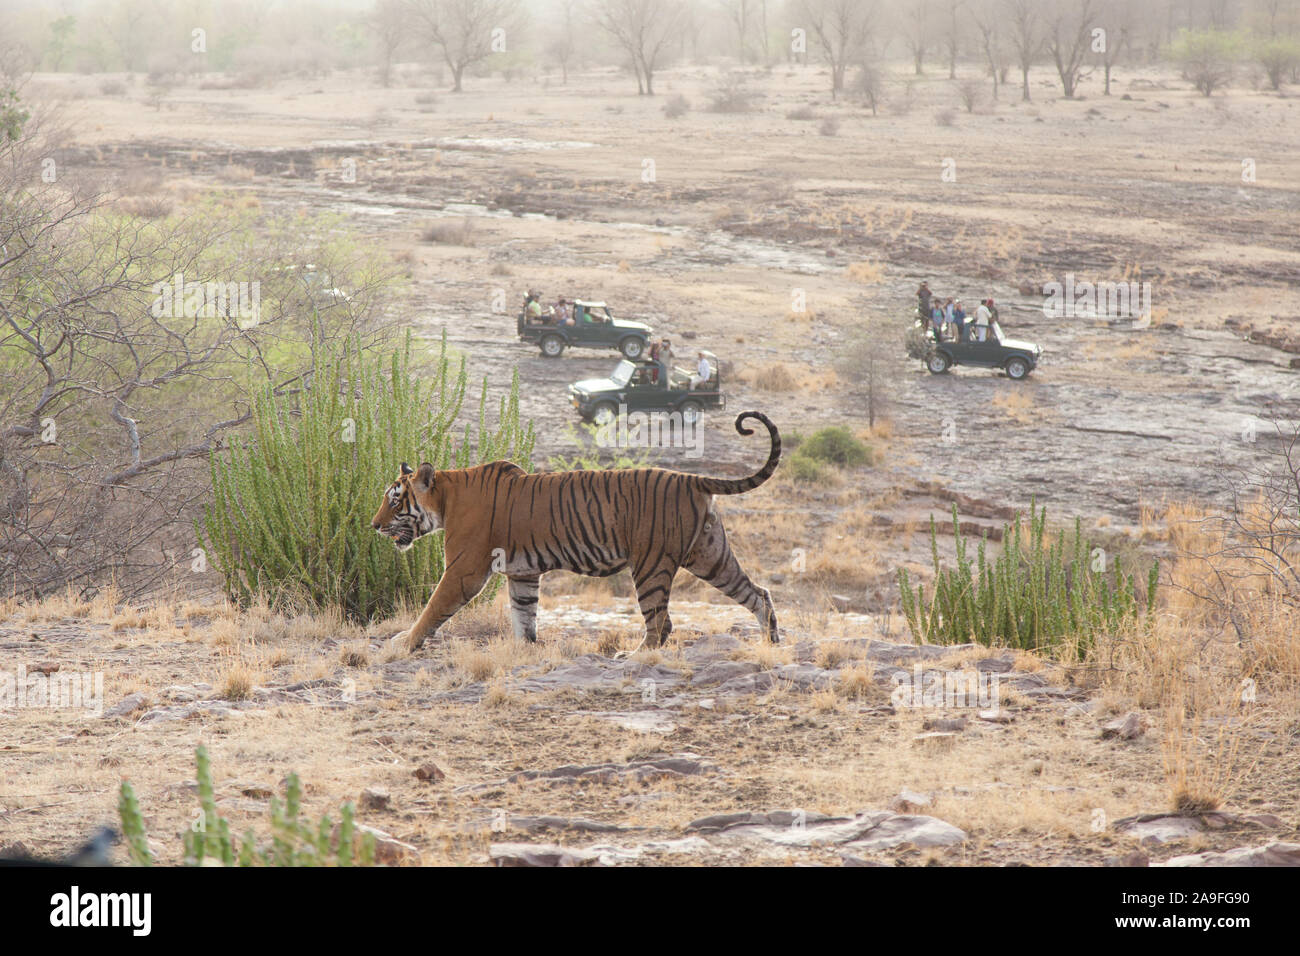 Turisti su safari fotografare un wild tigre del Bengala a piedi attraverso il Parco nazionale di Ranthambore, Rajasthan, India Foto Stock